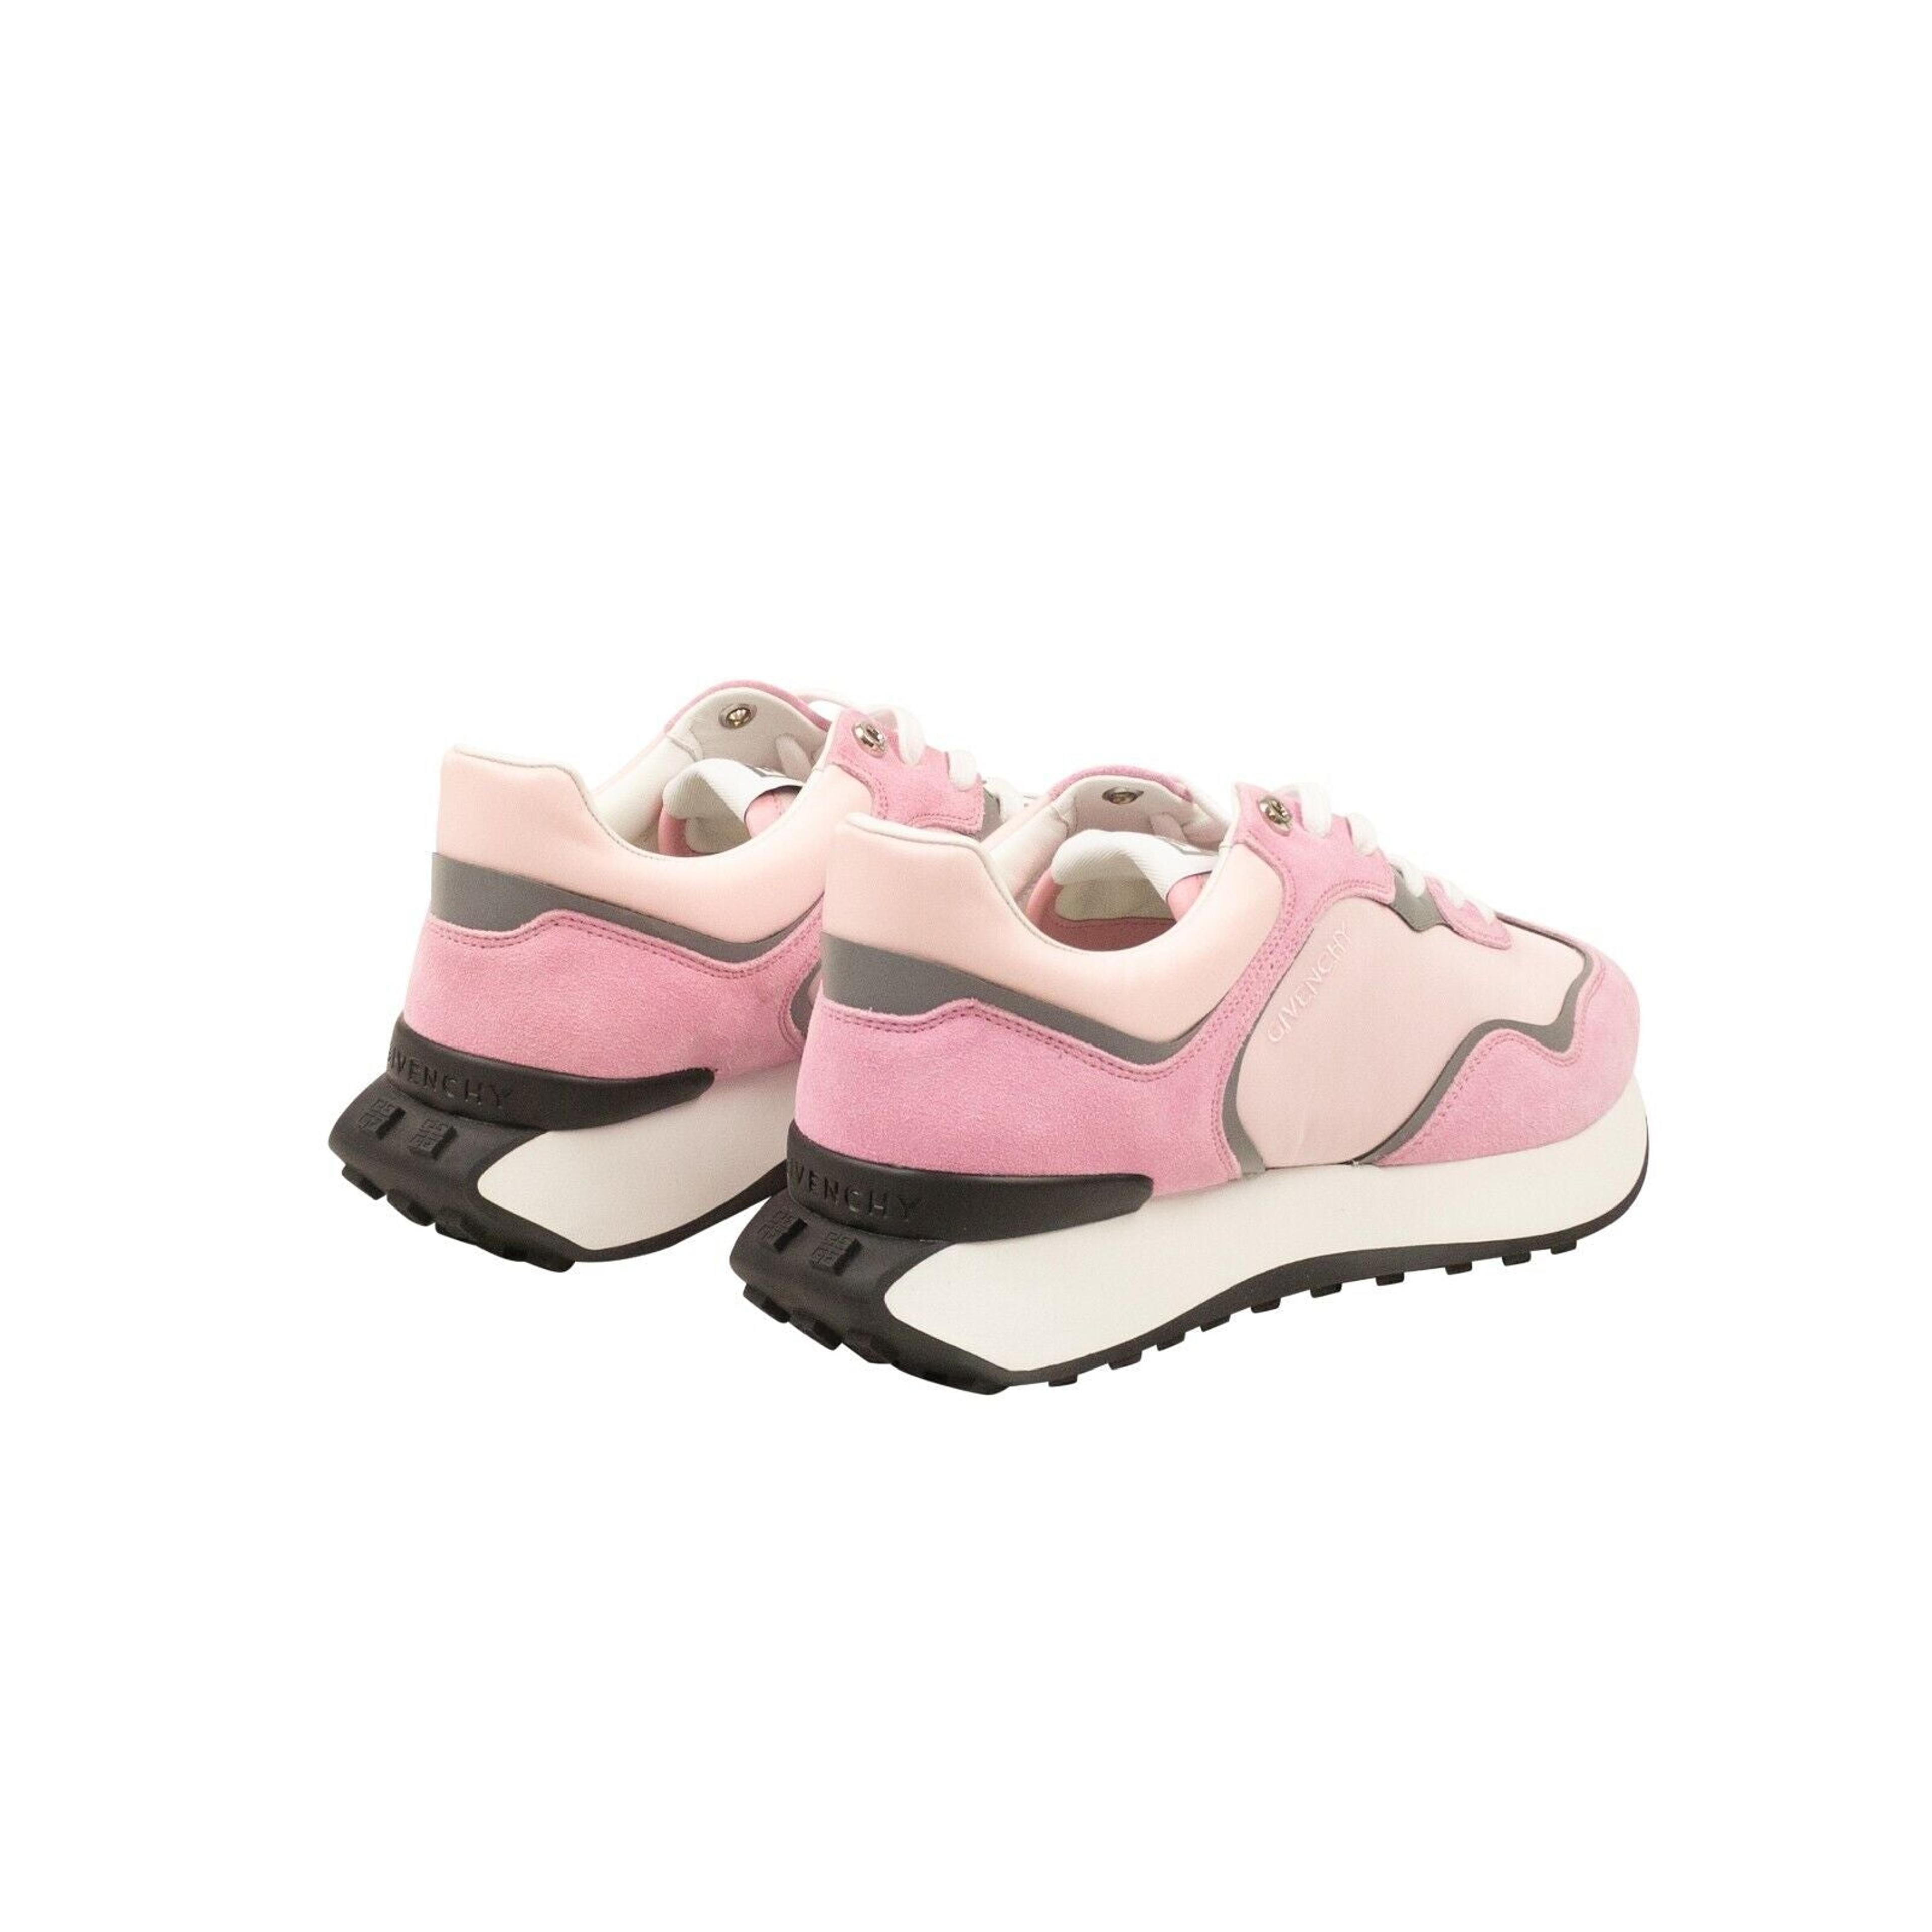 Alternate View 3 of Baby Pink Runner Sneakers